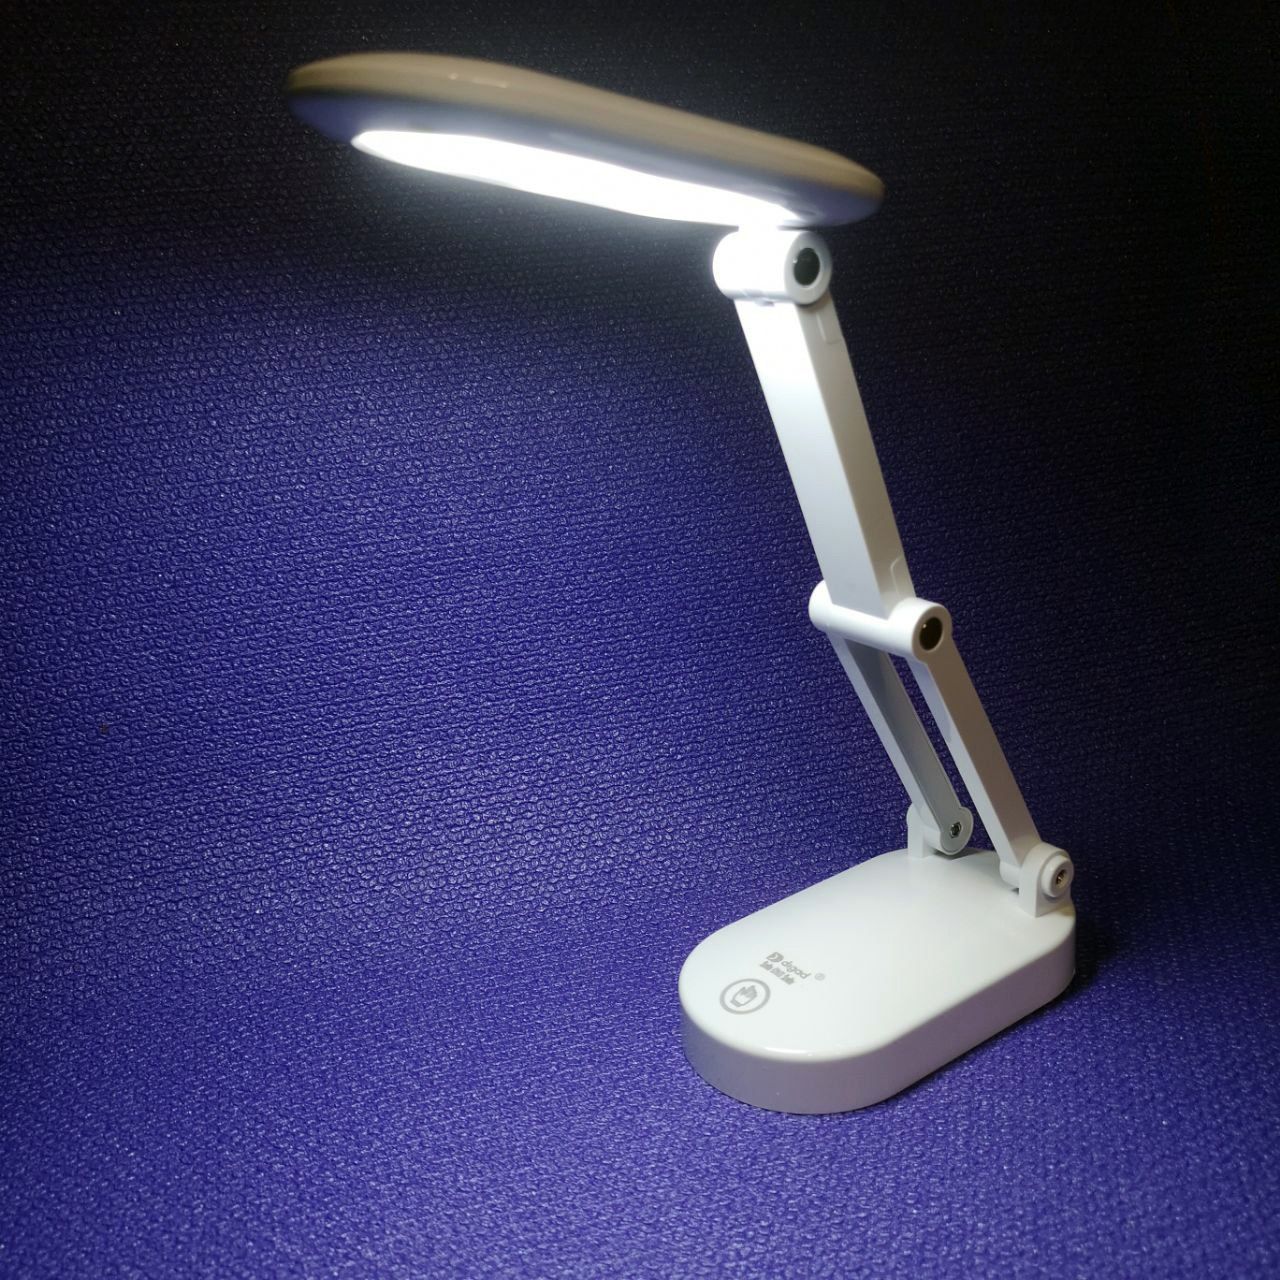 Настольная аккумуляторная Led лампа! Светильник-трансформер Digad 1914